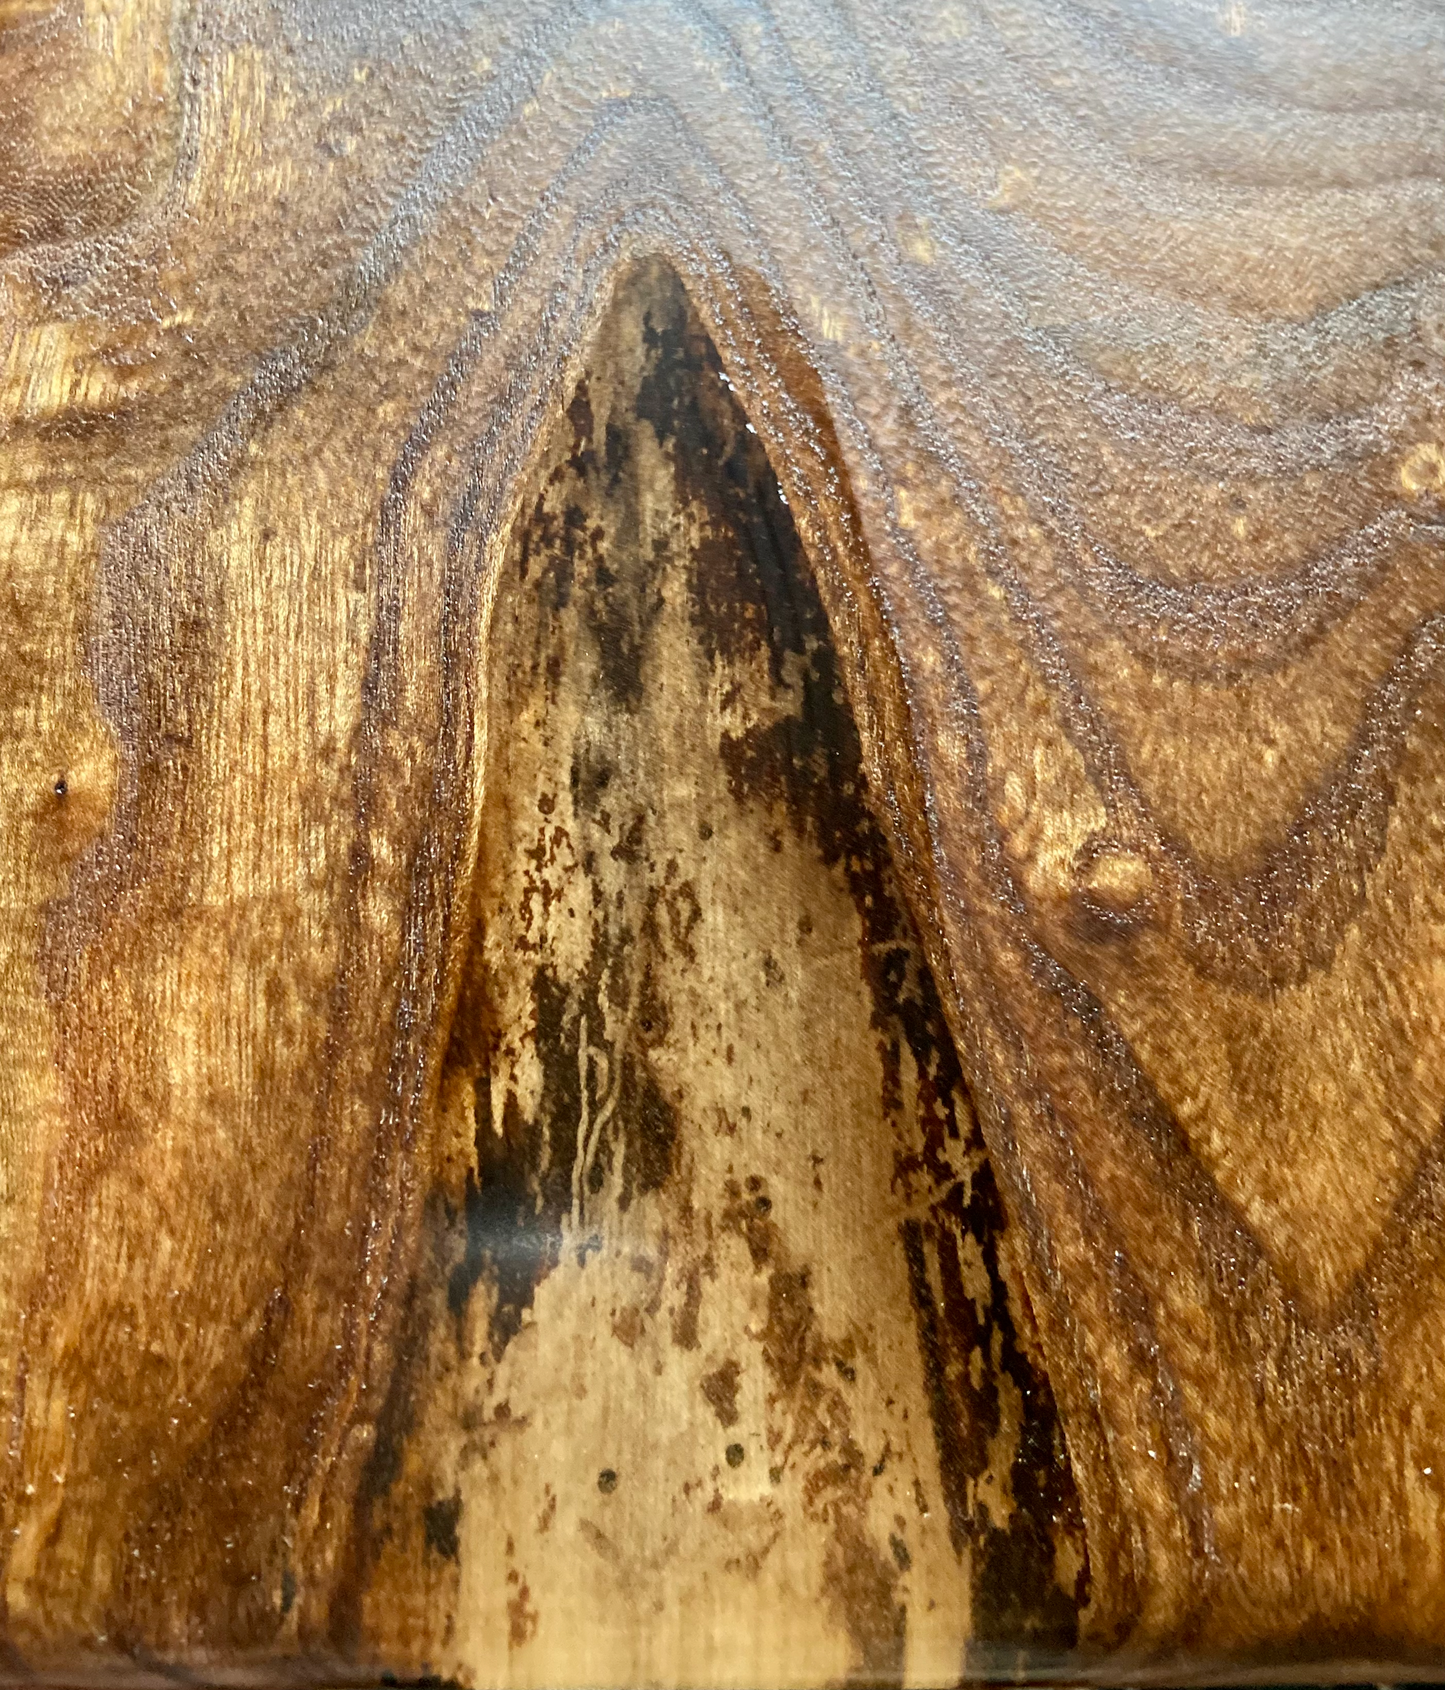 Burl Chestnut Coffee Table w/ Custom Chestnut Wood Legs